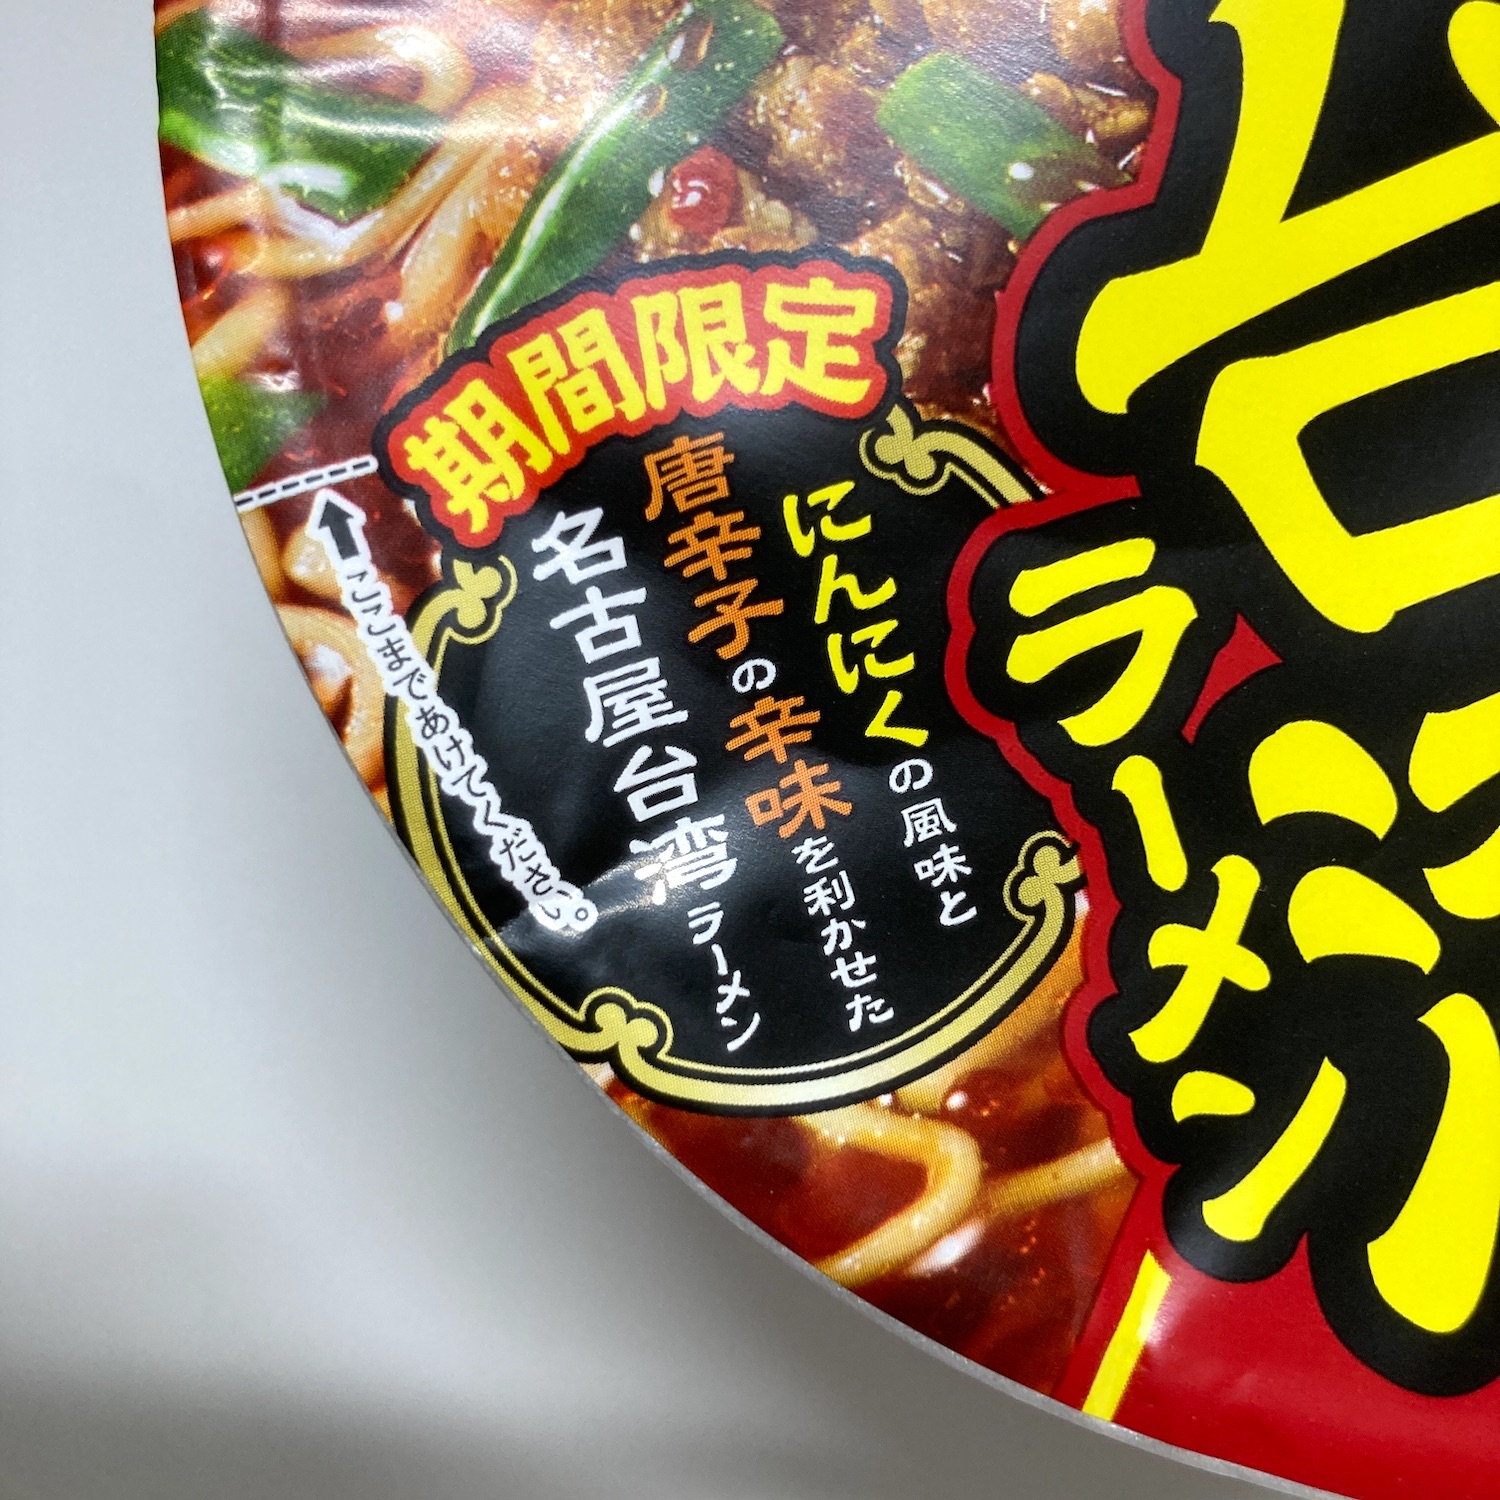 期間限定、にんにくの風味、唐辛子の辛味...<br />名古屋台湾ラーメンの意味はわかりませんが、このキャッチのみで十分です。